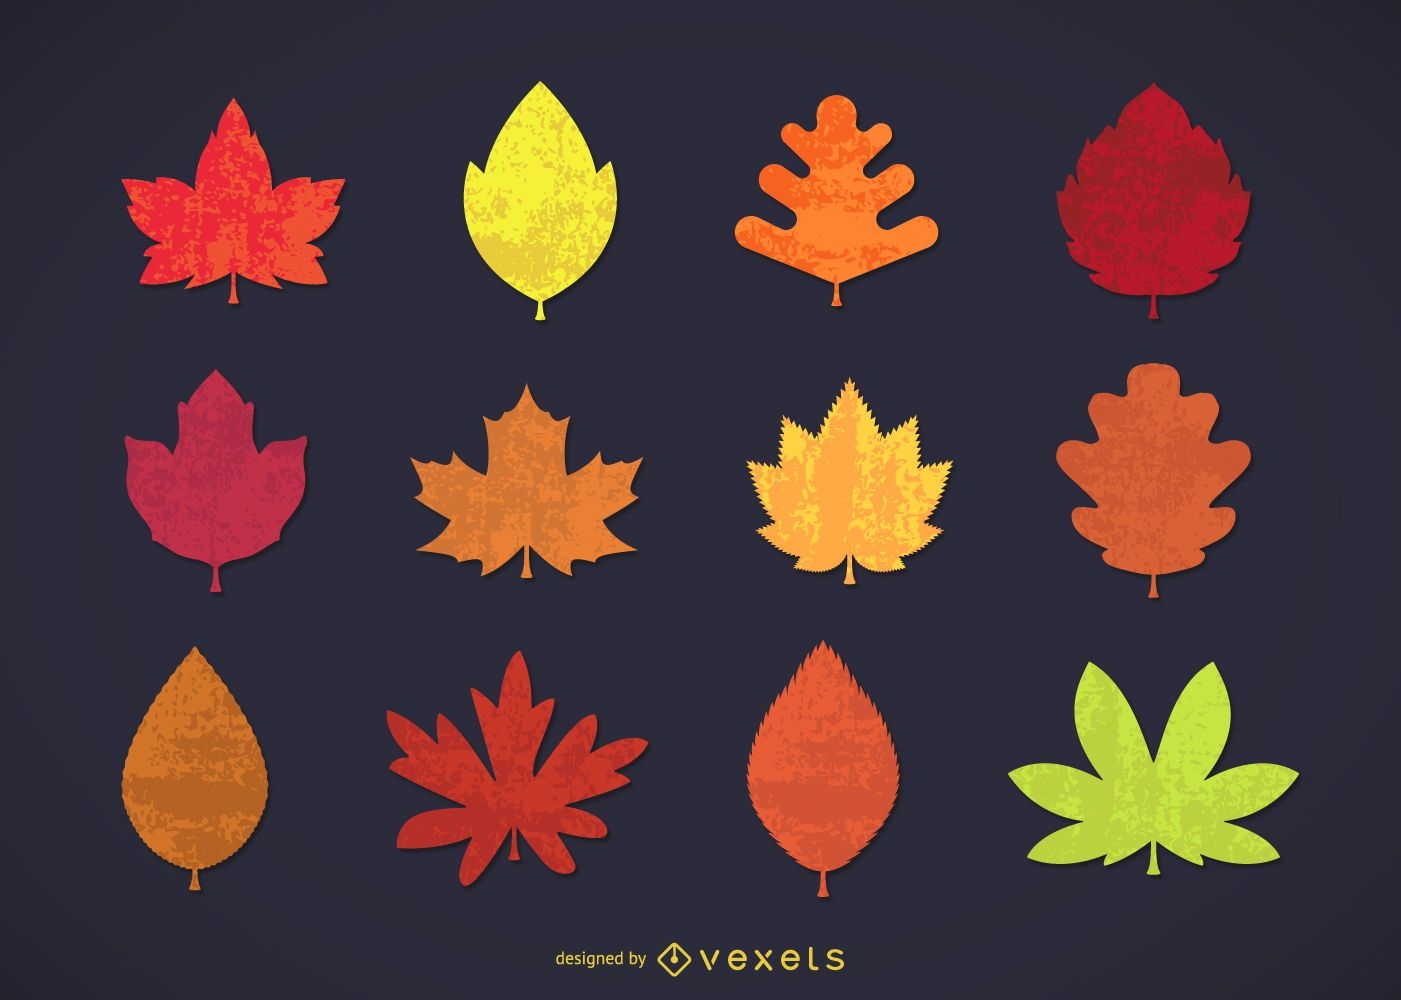 Colección de hojas de otoño